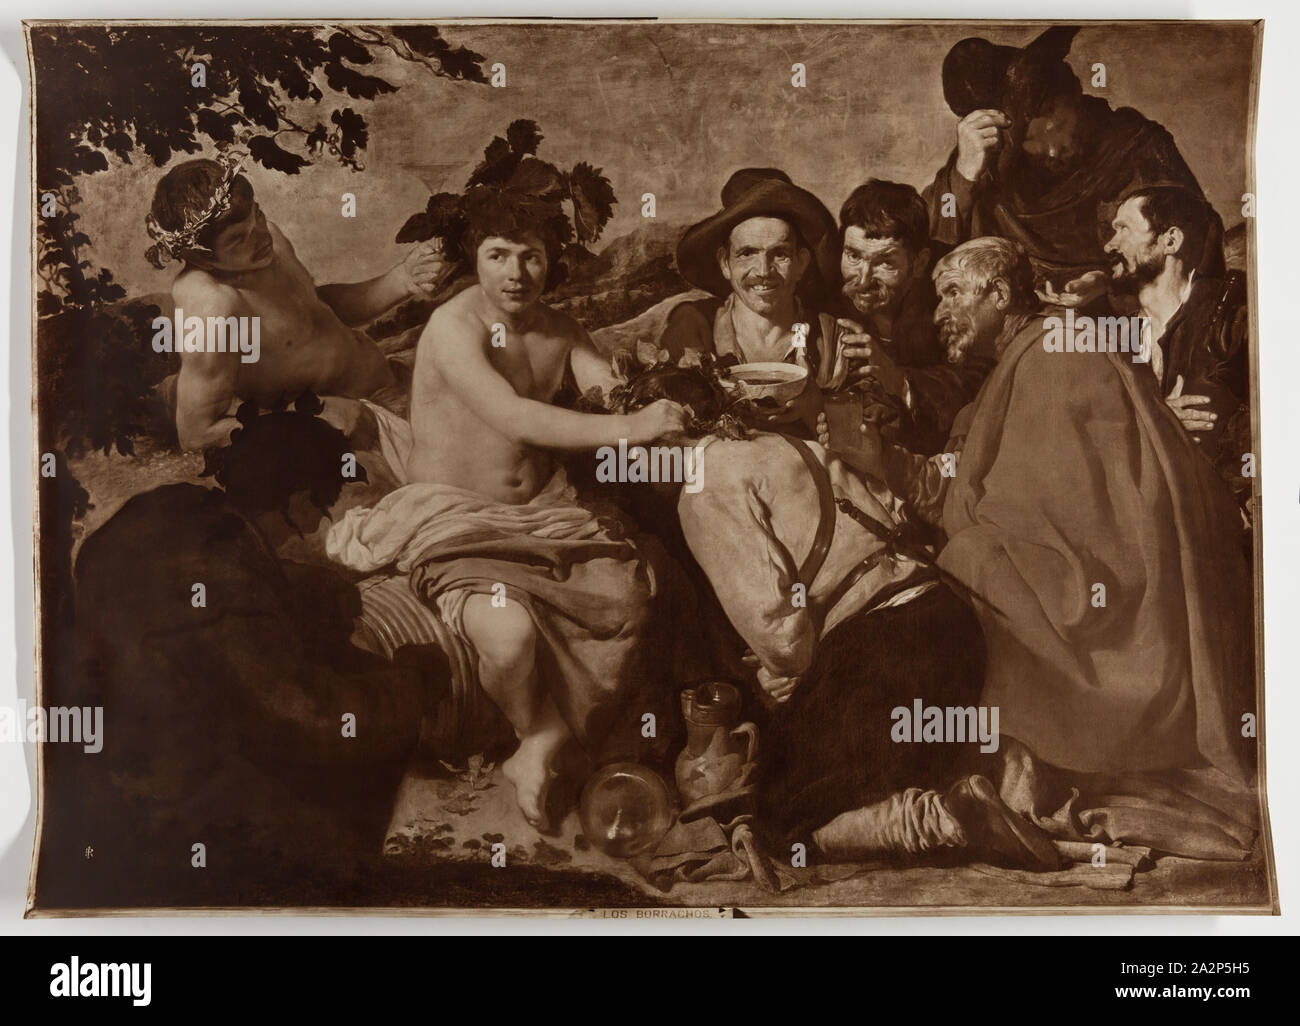 James Anderson, English, 1813-1877, after Diego Rodríguez de Silva Velázquez, Spanish, 1599-1660, Los Borrachos, c. 1906, Sepia-toned carbon print, Image: 21 5/8 x 29 7/8 in Stock Photo